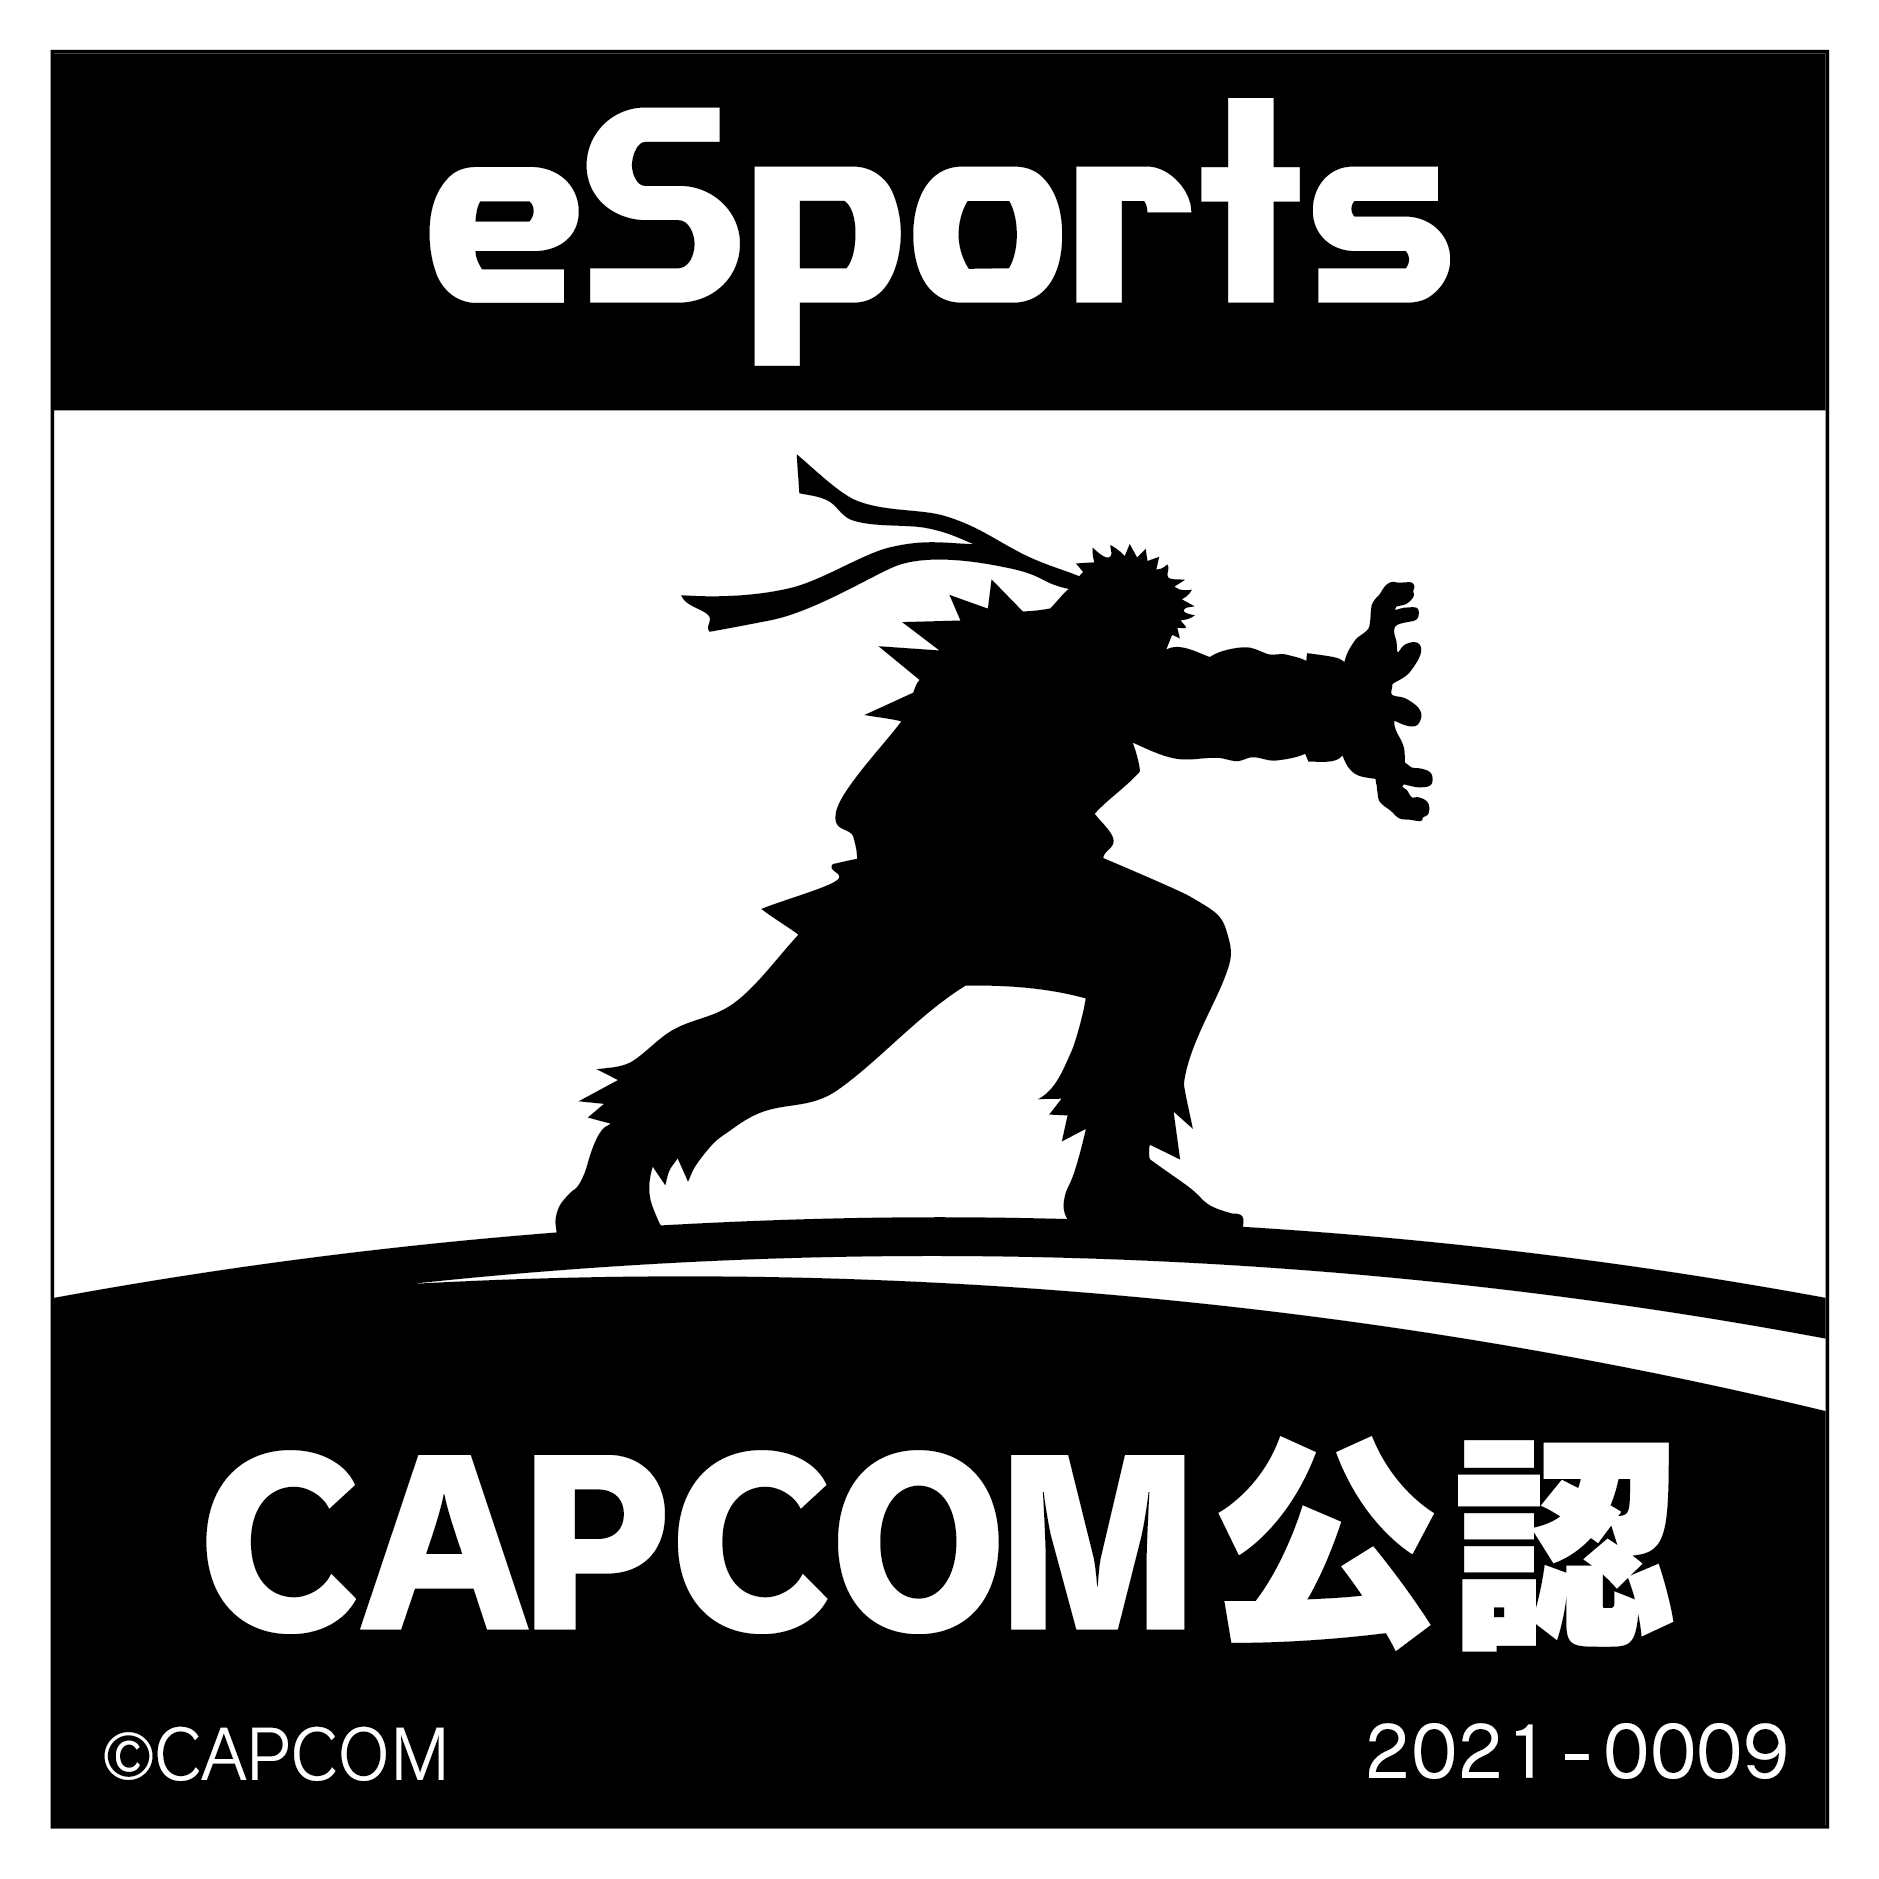 eSports CAPCOM公認 2021-0009